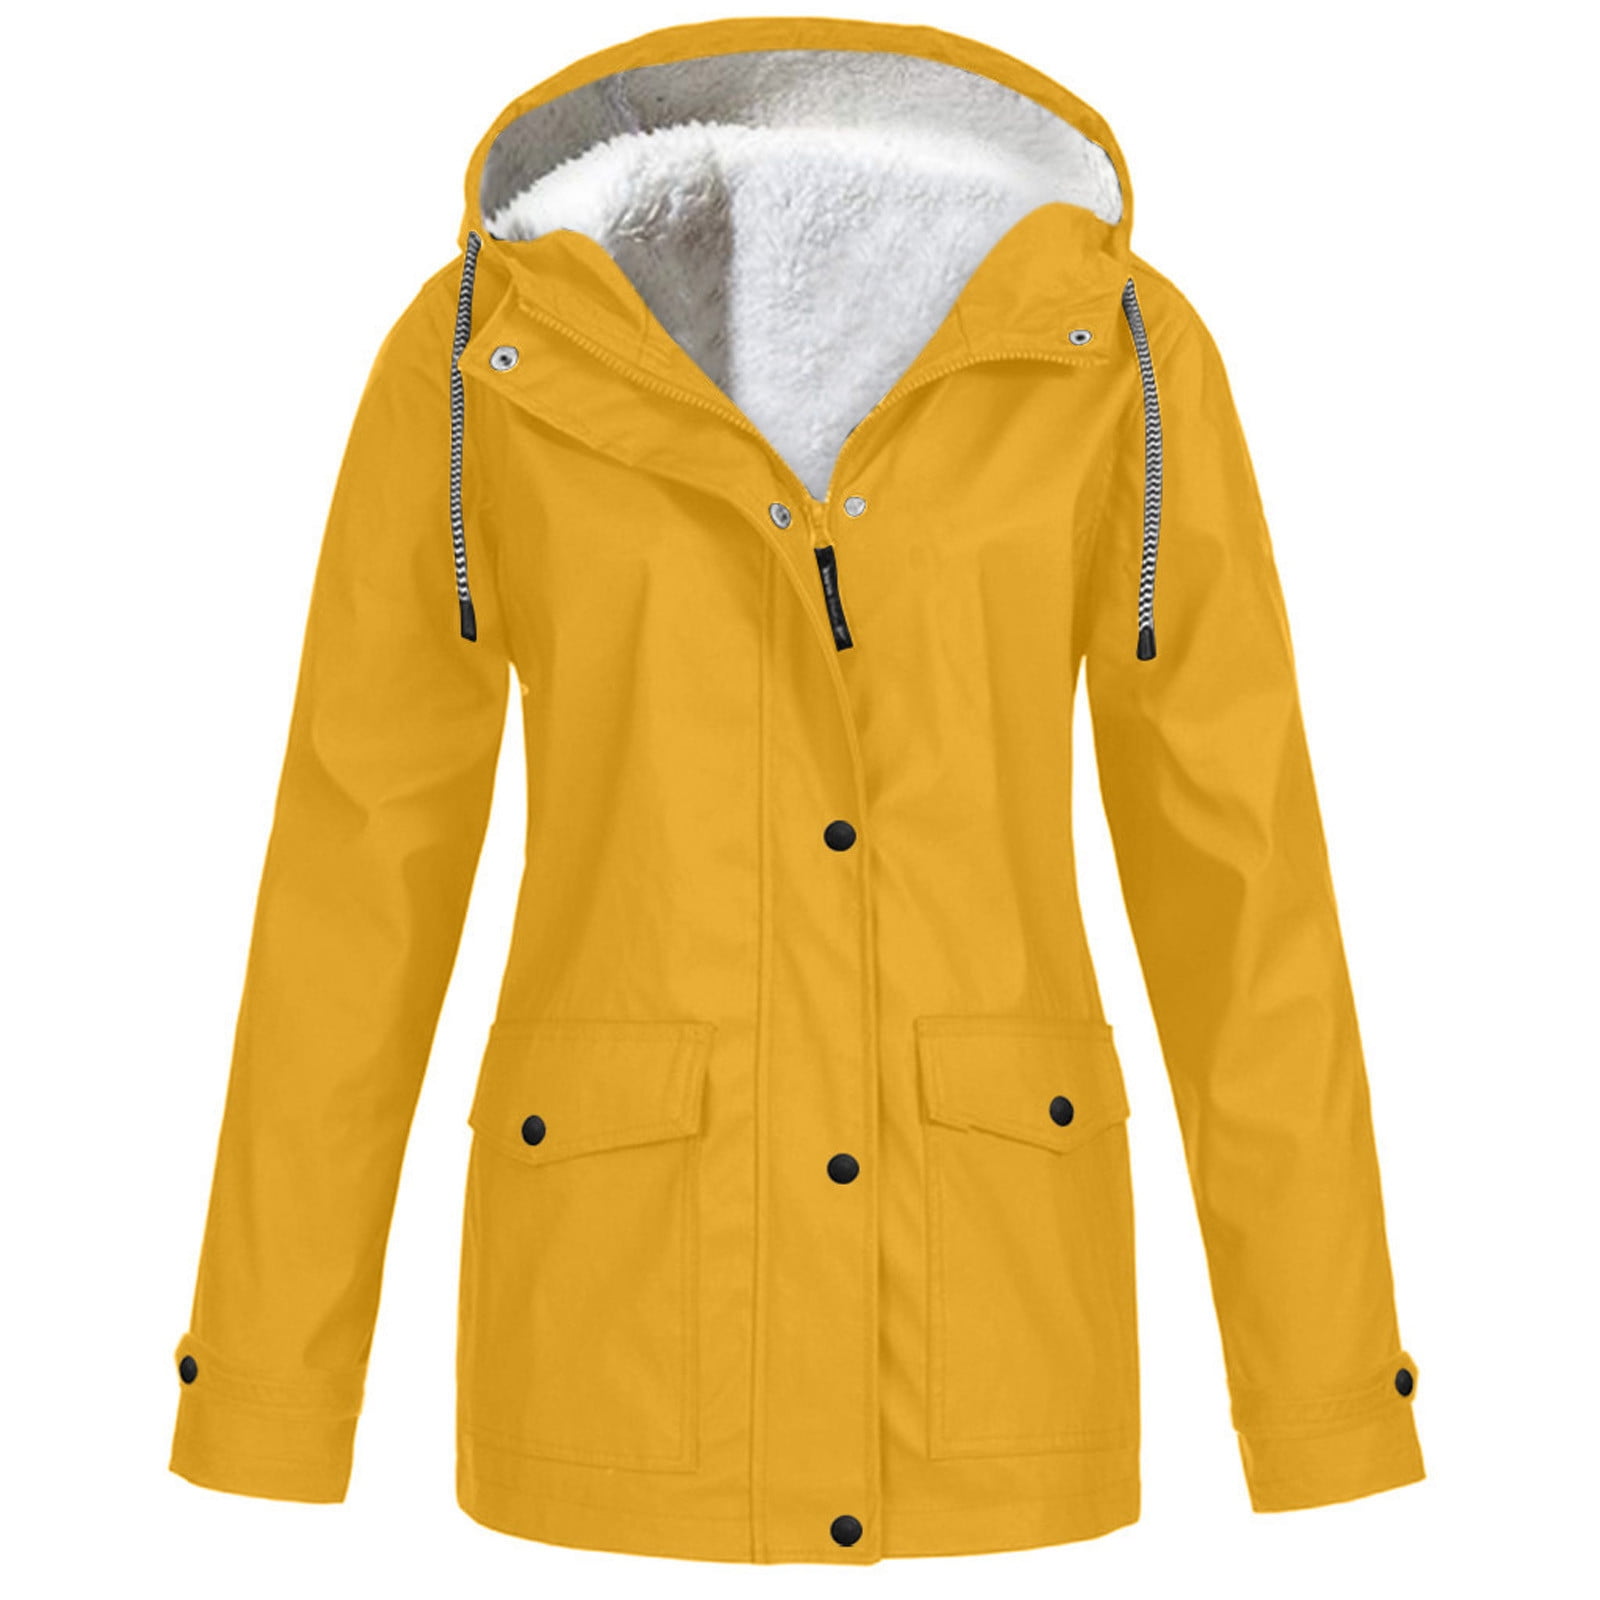 fartey Women’s Solid Rain Jacket Outdoor Jackets Waterproof Hooded ...